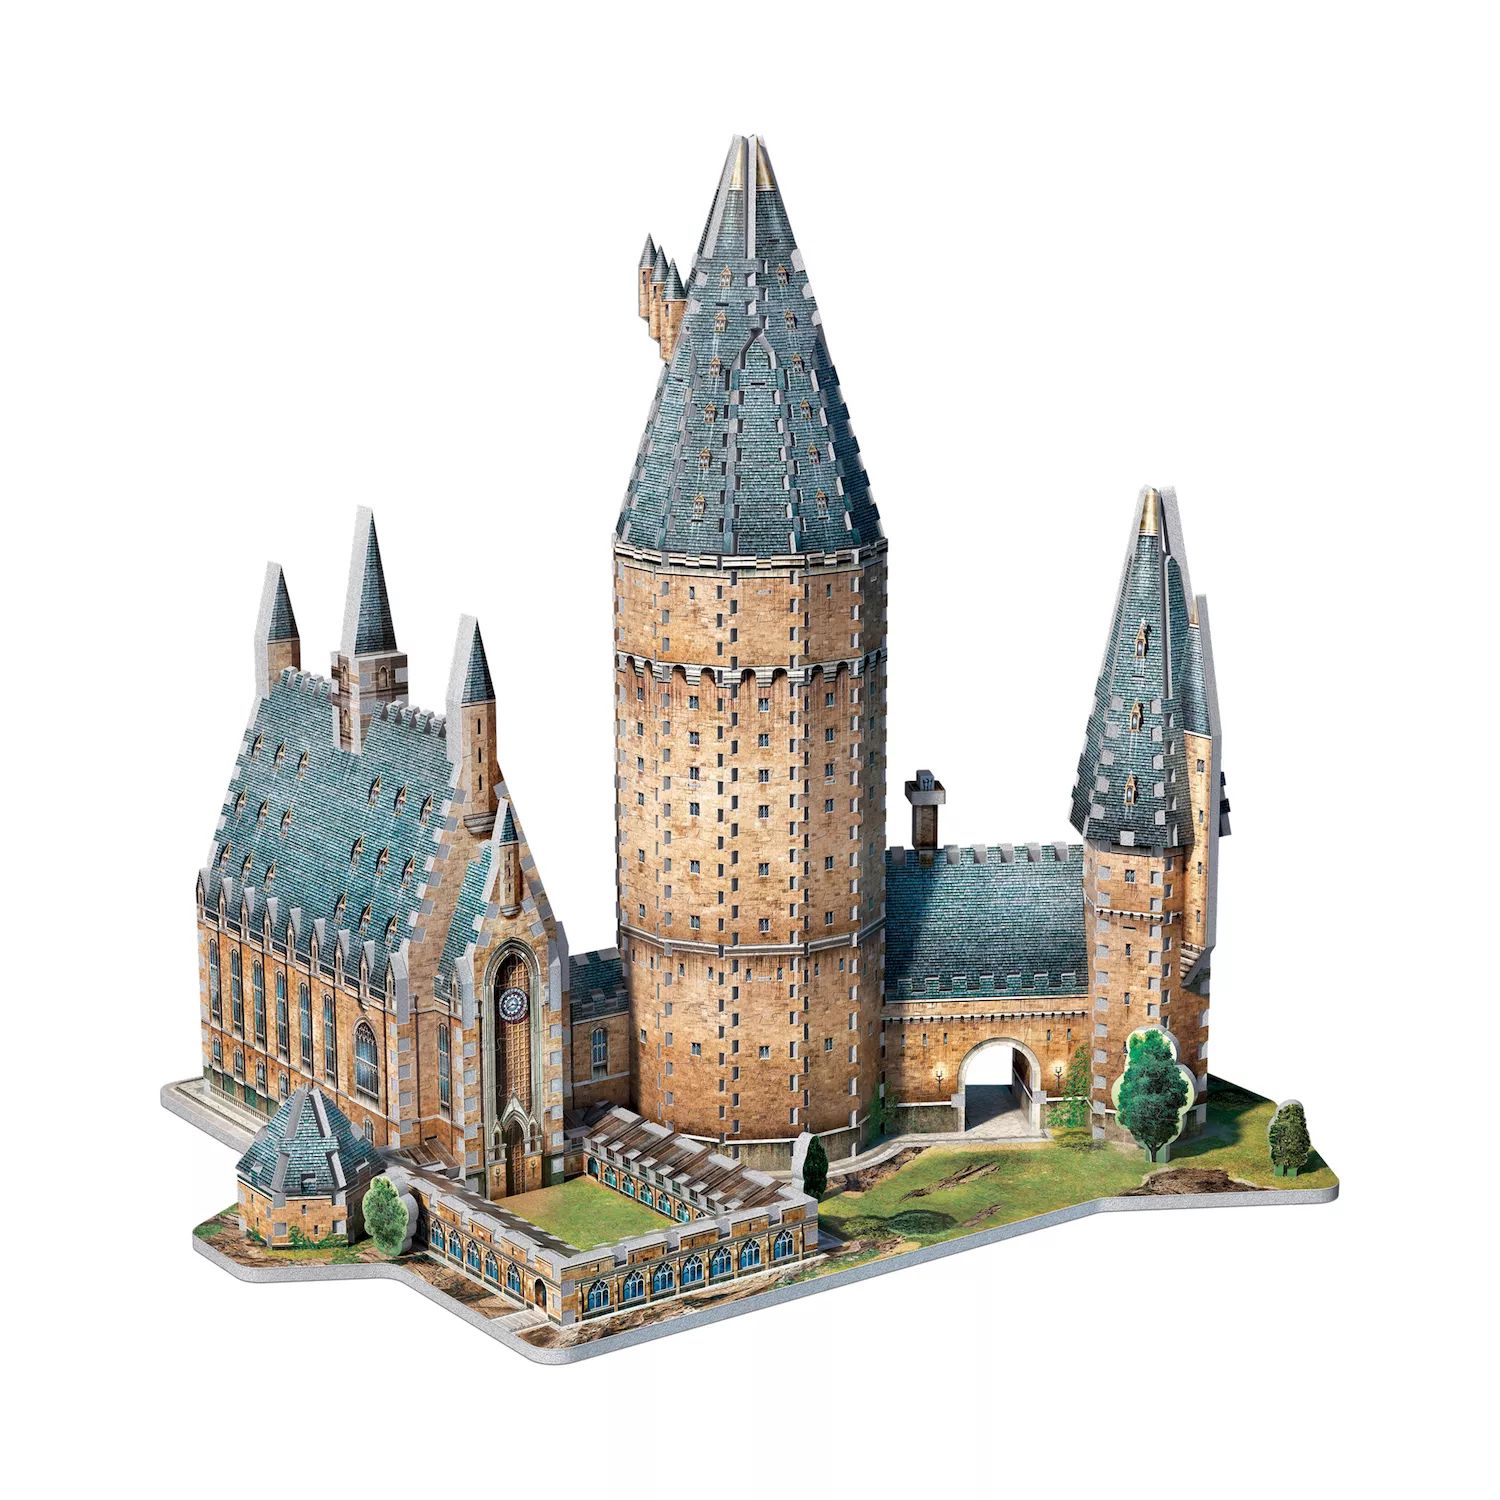 Коллекция Гарри Поттера 850 шт. 3D-пазл «Большой зал Хогвартса» от Wrebbit Wrebbit конструктор большой зал хогвартса 11007